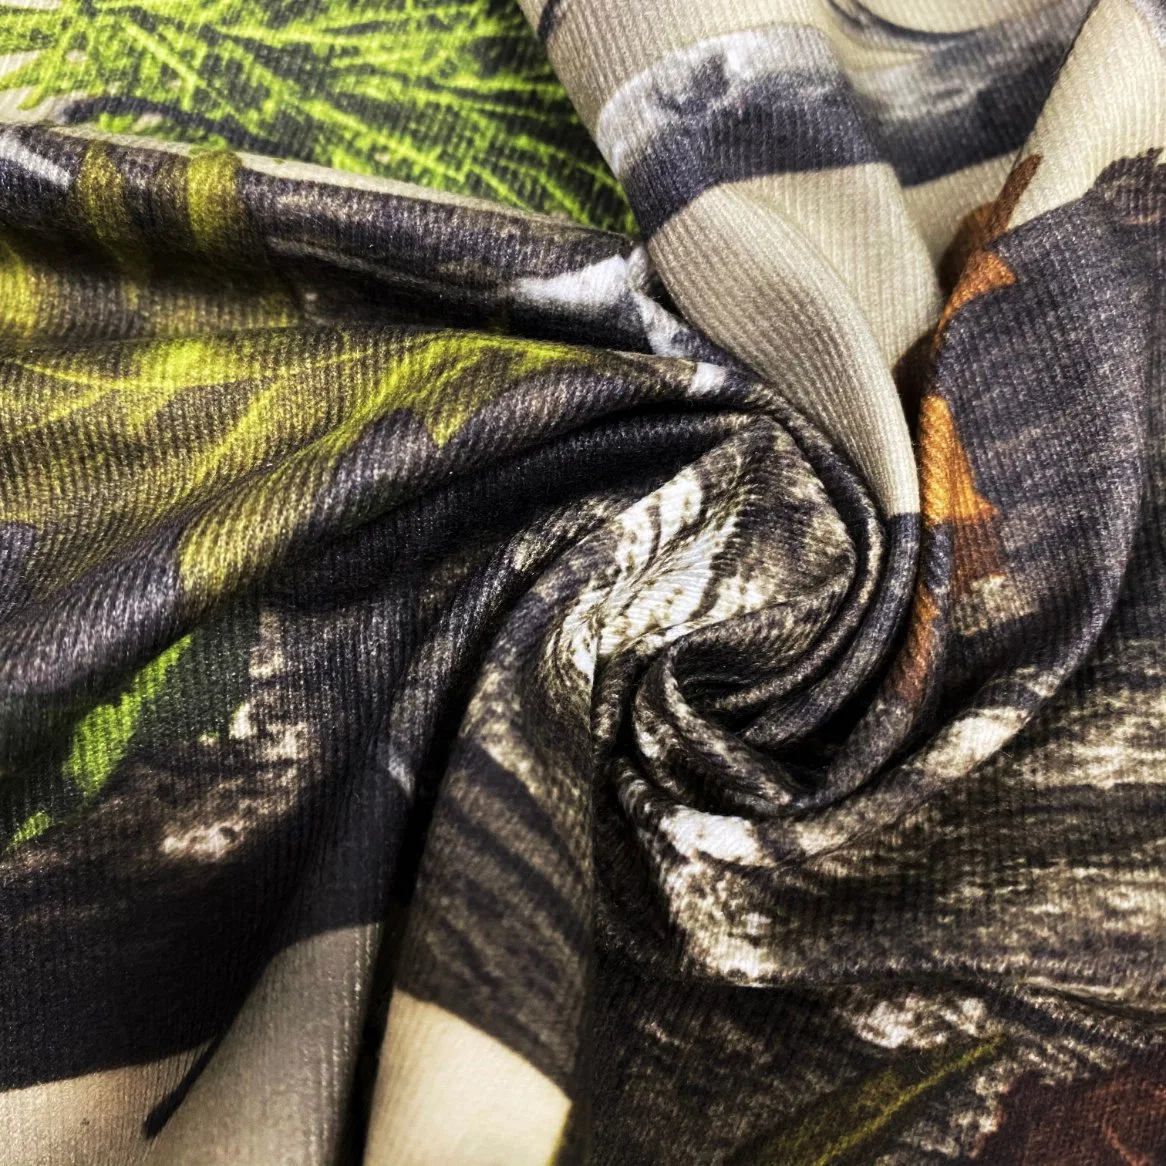 100% Poliéster Mercerized tejido de terciopelo tejido impreso con una densa tela de terciopelo de ropa de camuflaje